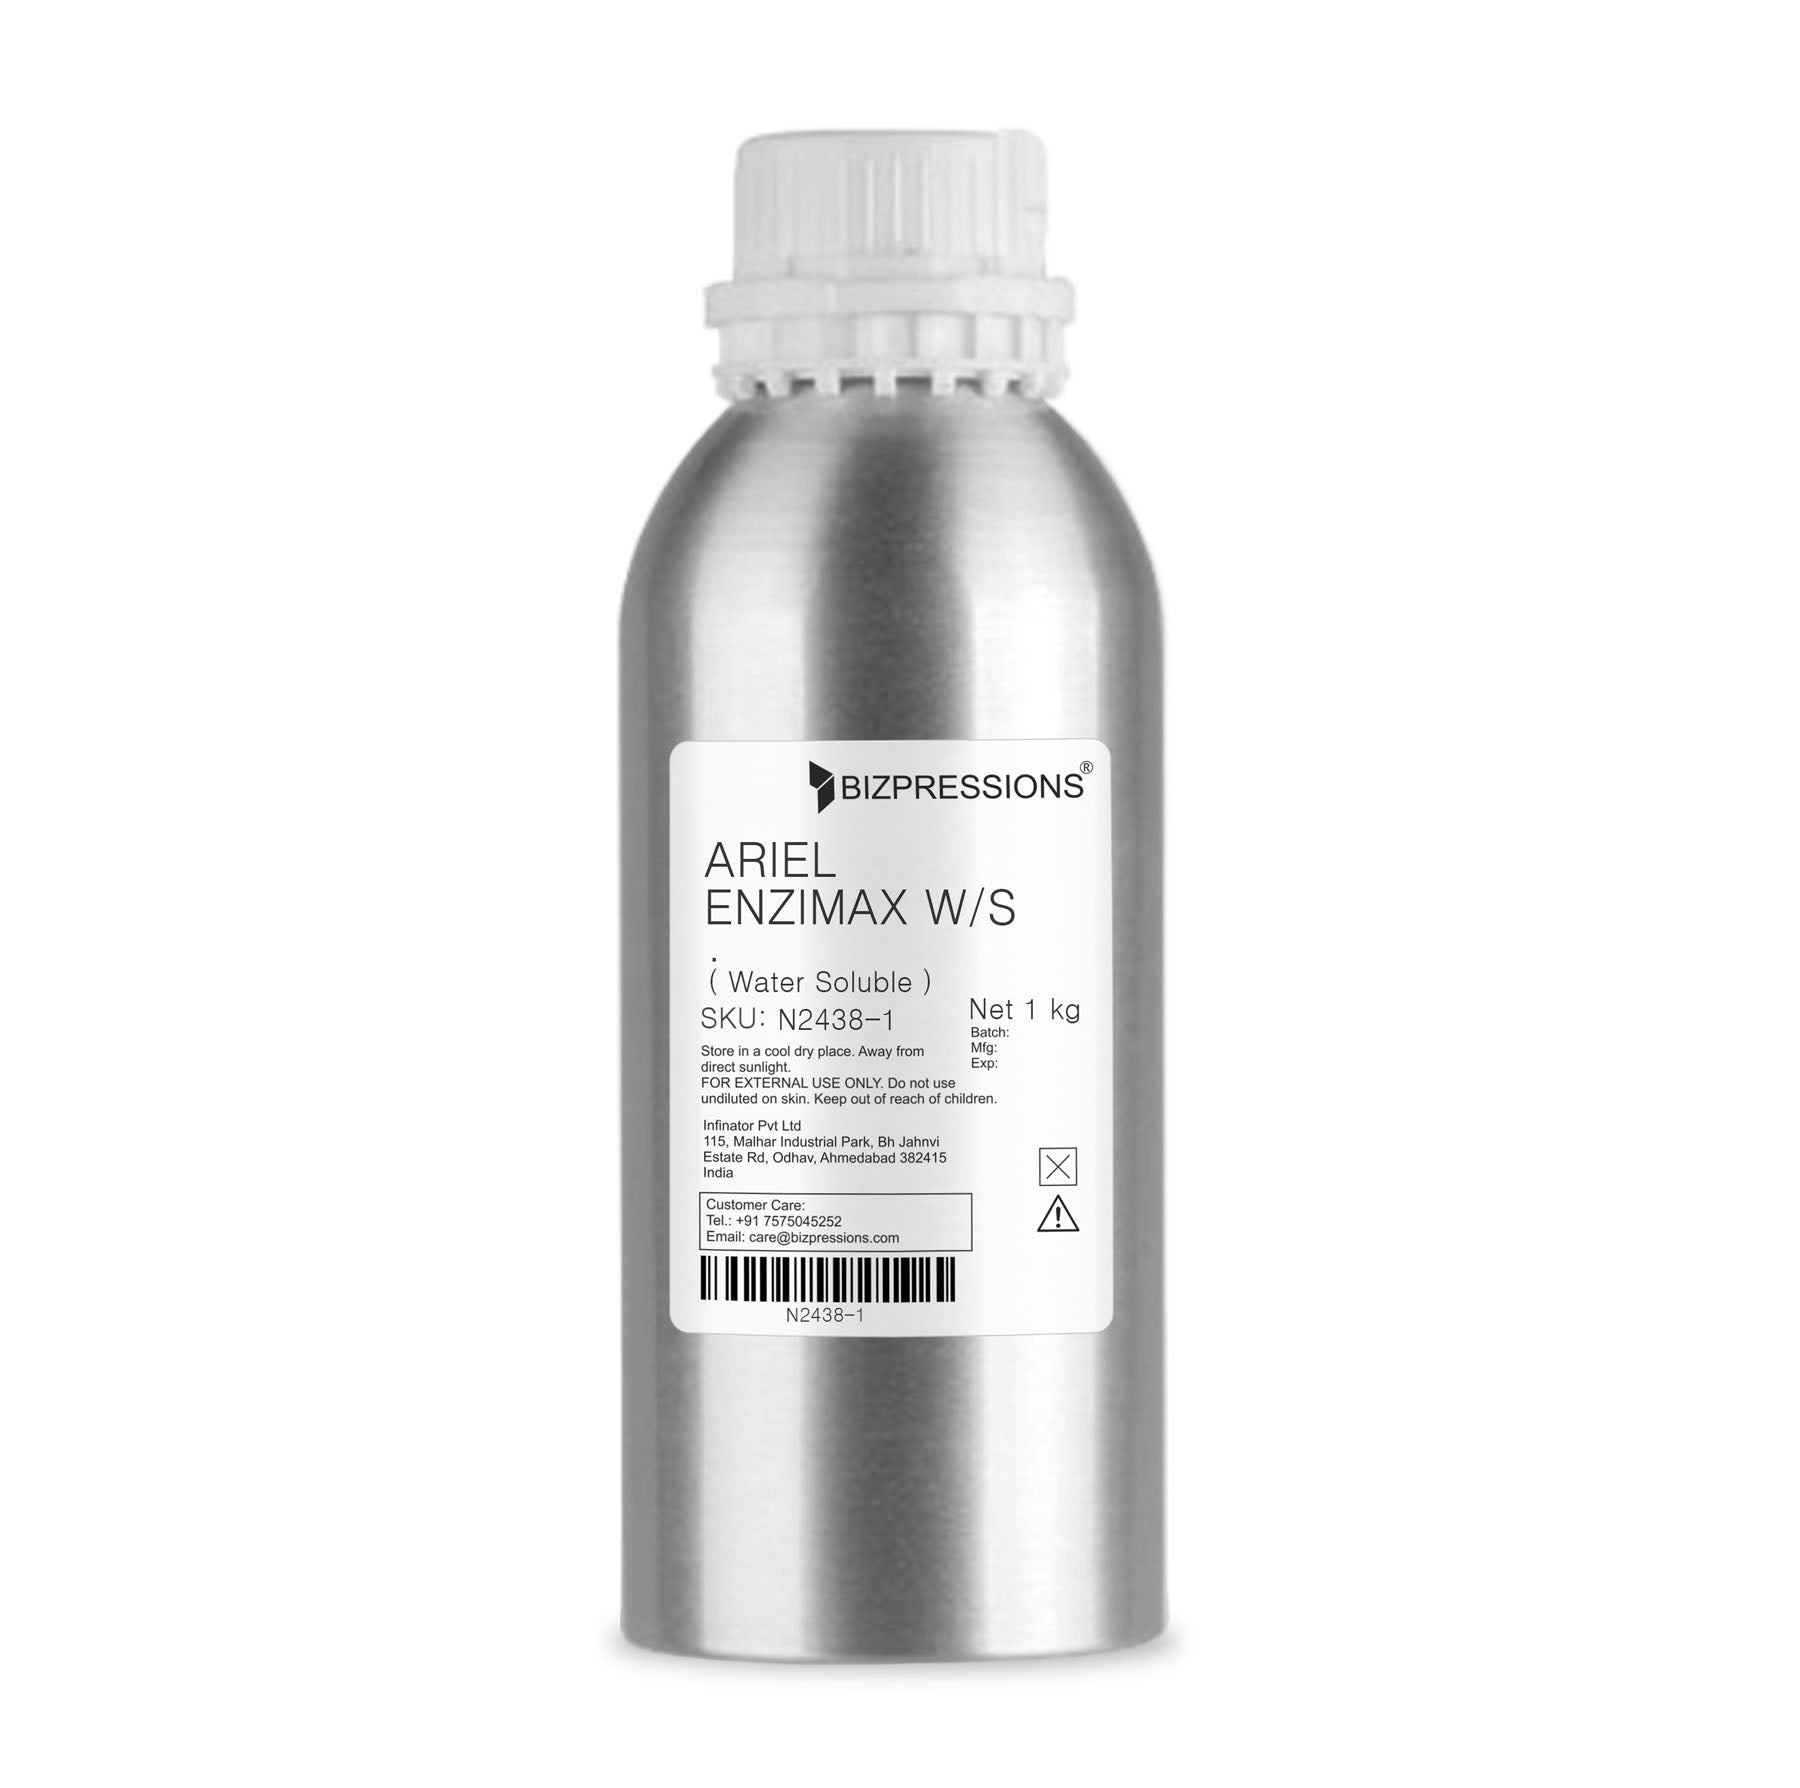 ARIEL ENZIMAX W/S - Fragrance ( Water Soluble ) - 1 kg